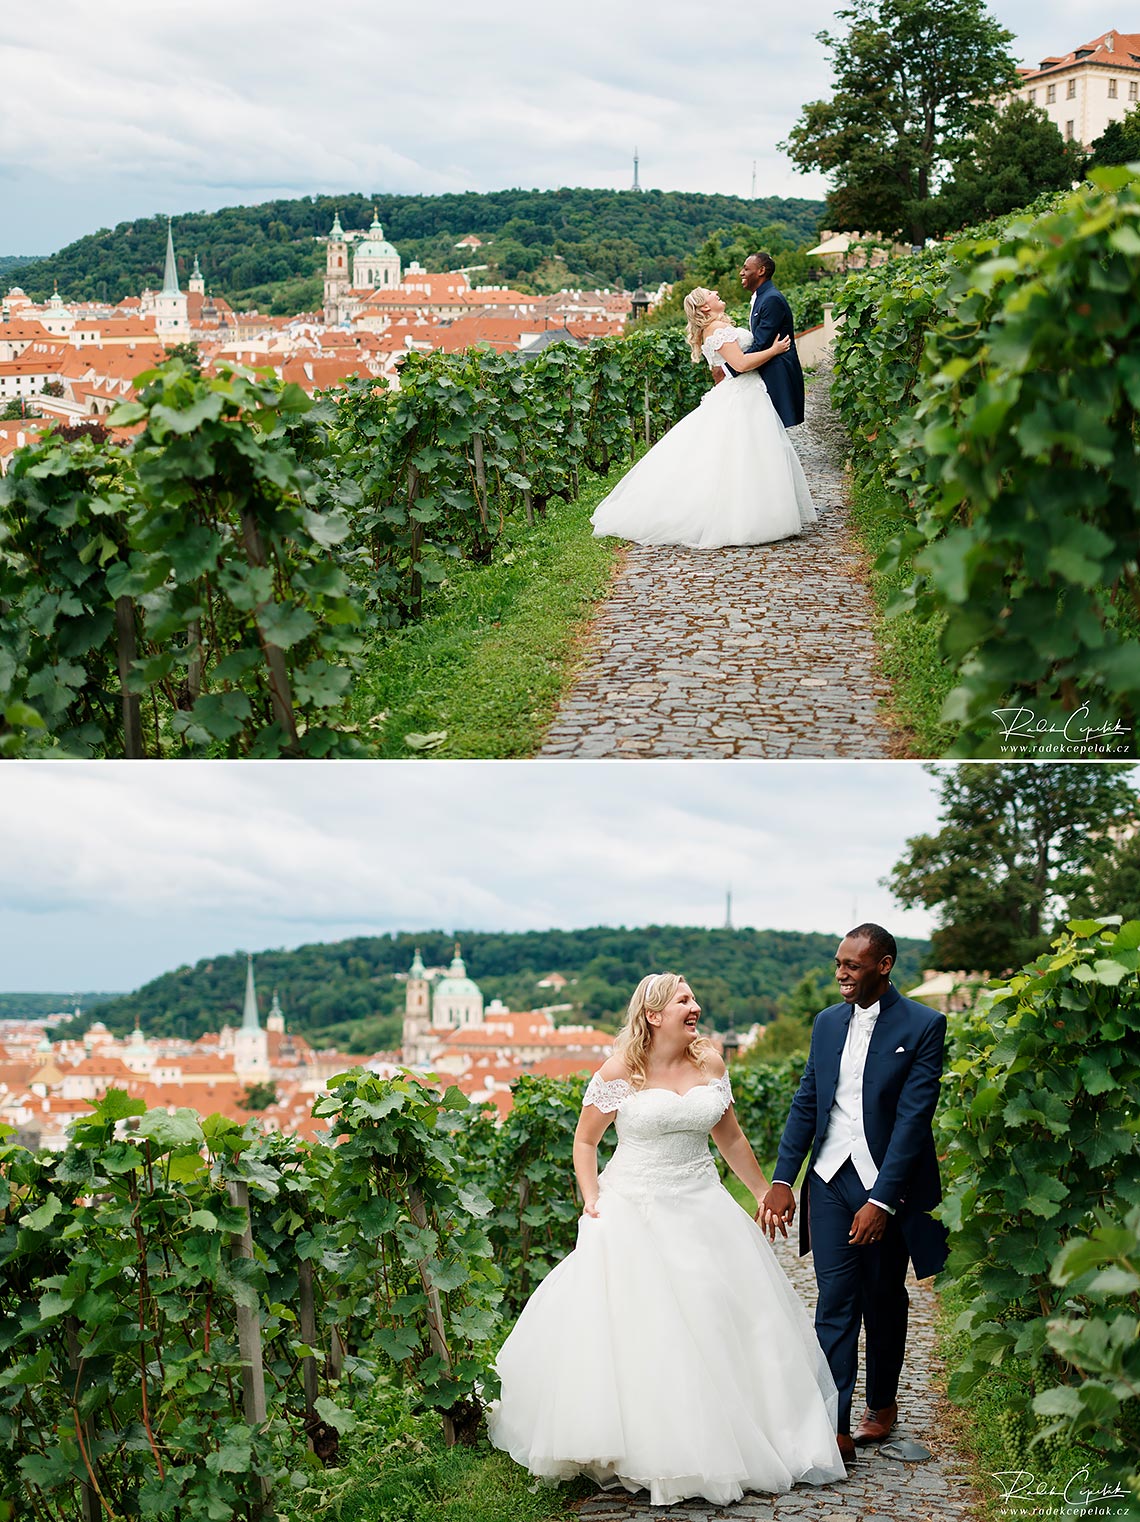 Svatební fotografie nevěsty a ženicha ve vinici u Villa Richter s výhledem na Prahu